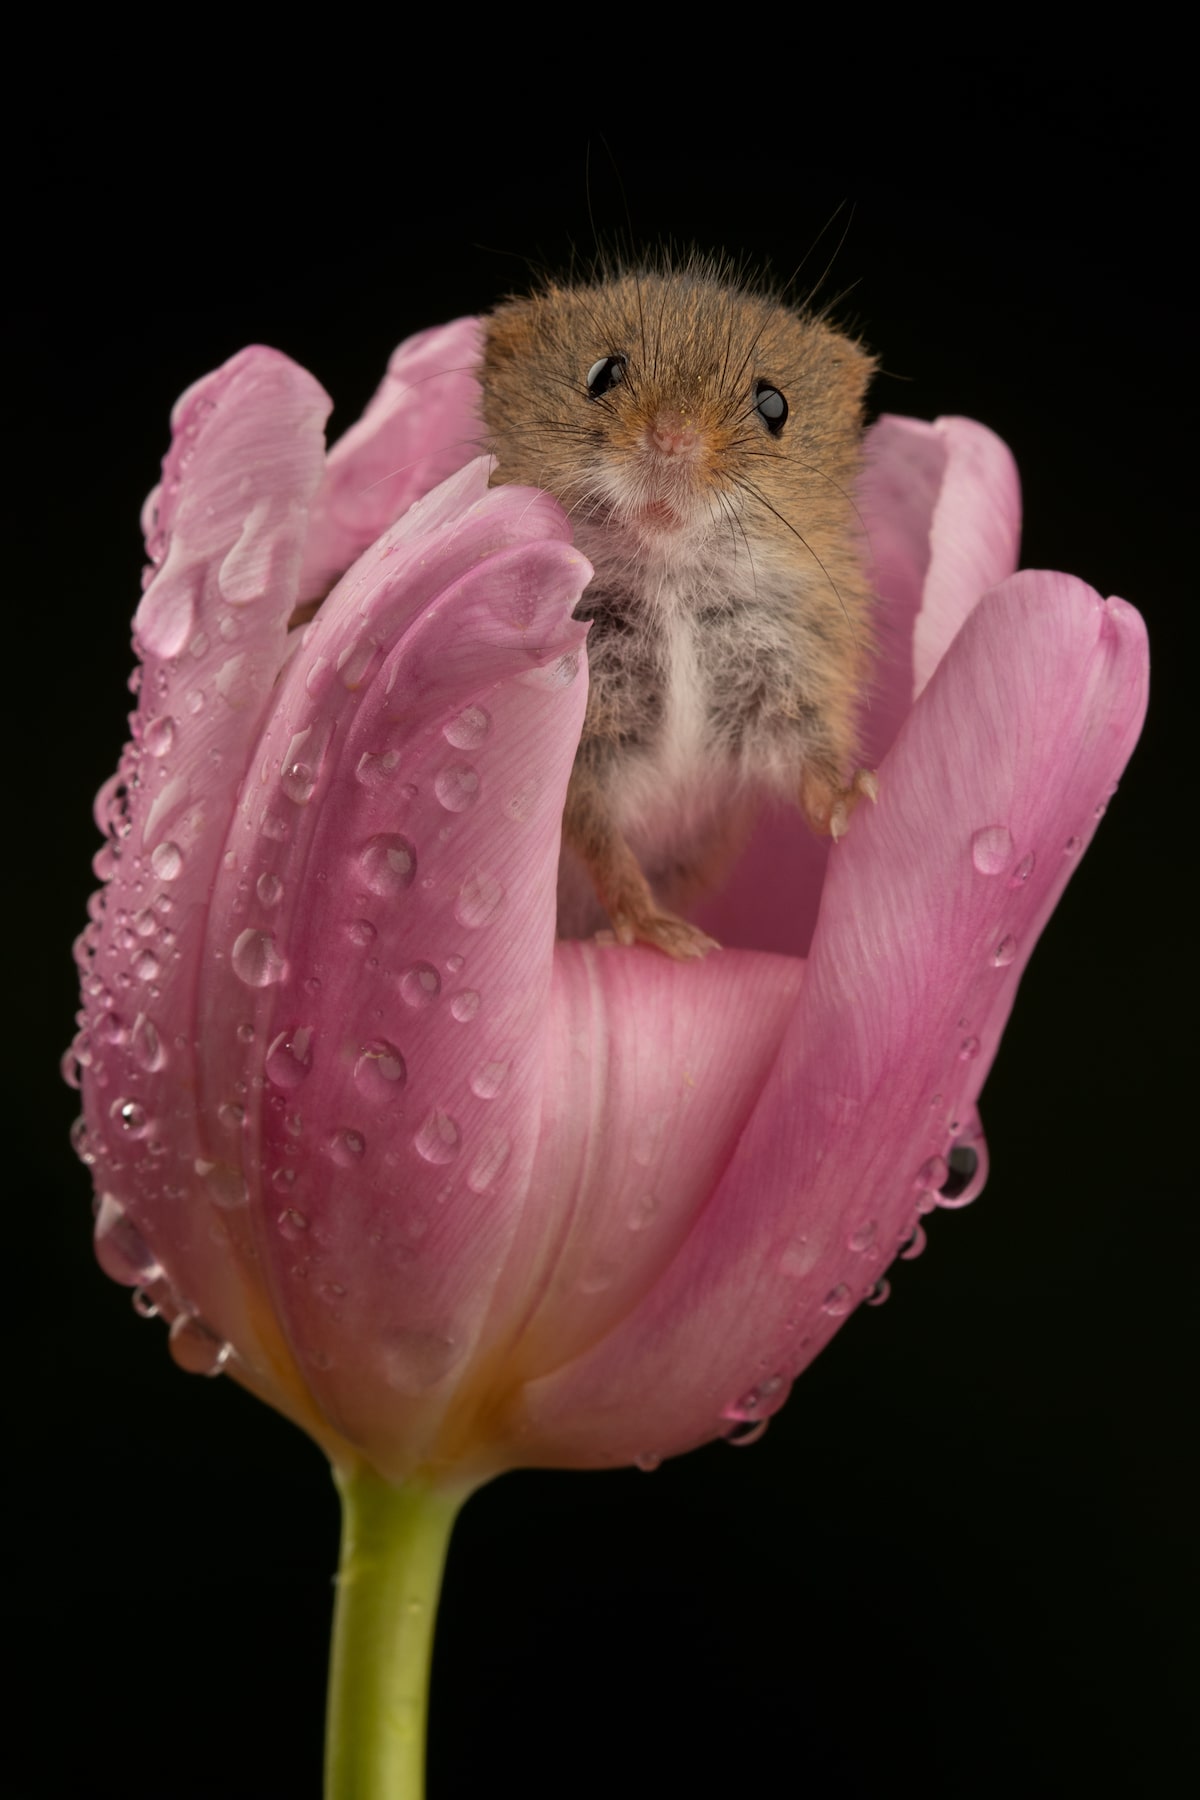 Adorable ratón en una flor